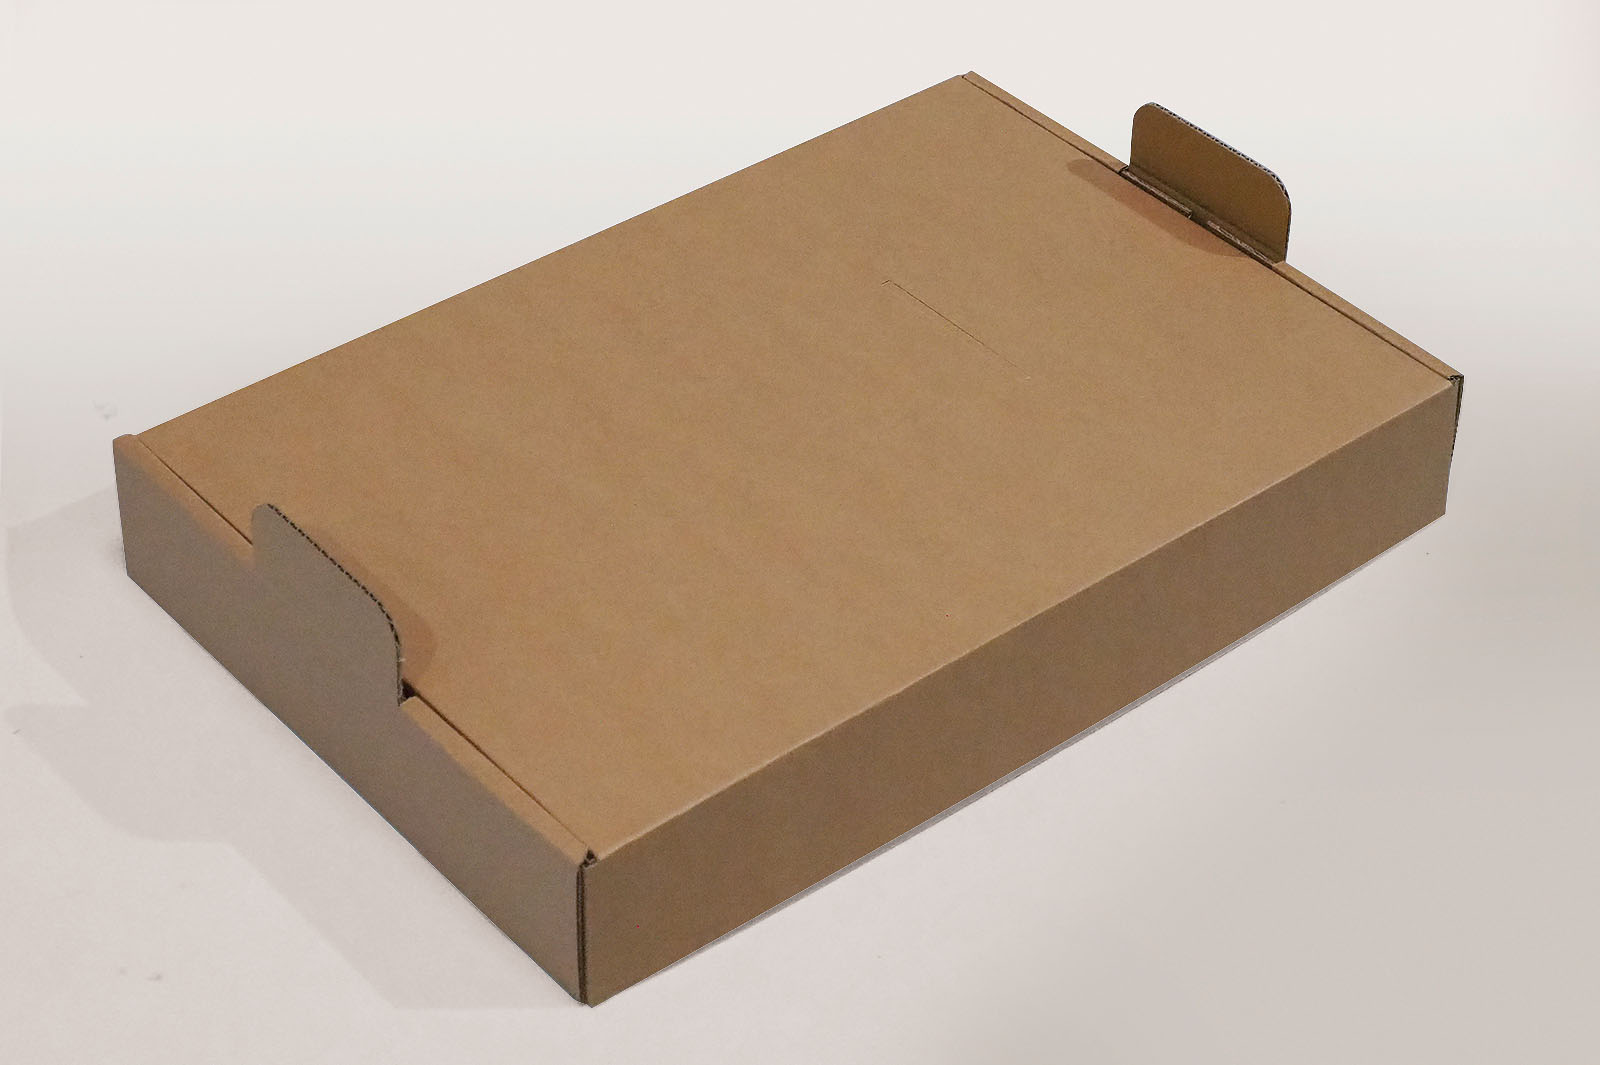 Der Karton mit dem Zubehör-Set ist Bestandteil einer Verpackung insgesamt der Siebträgermaschine.